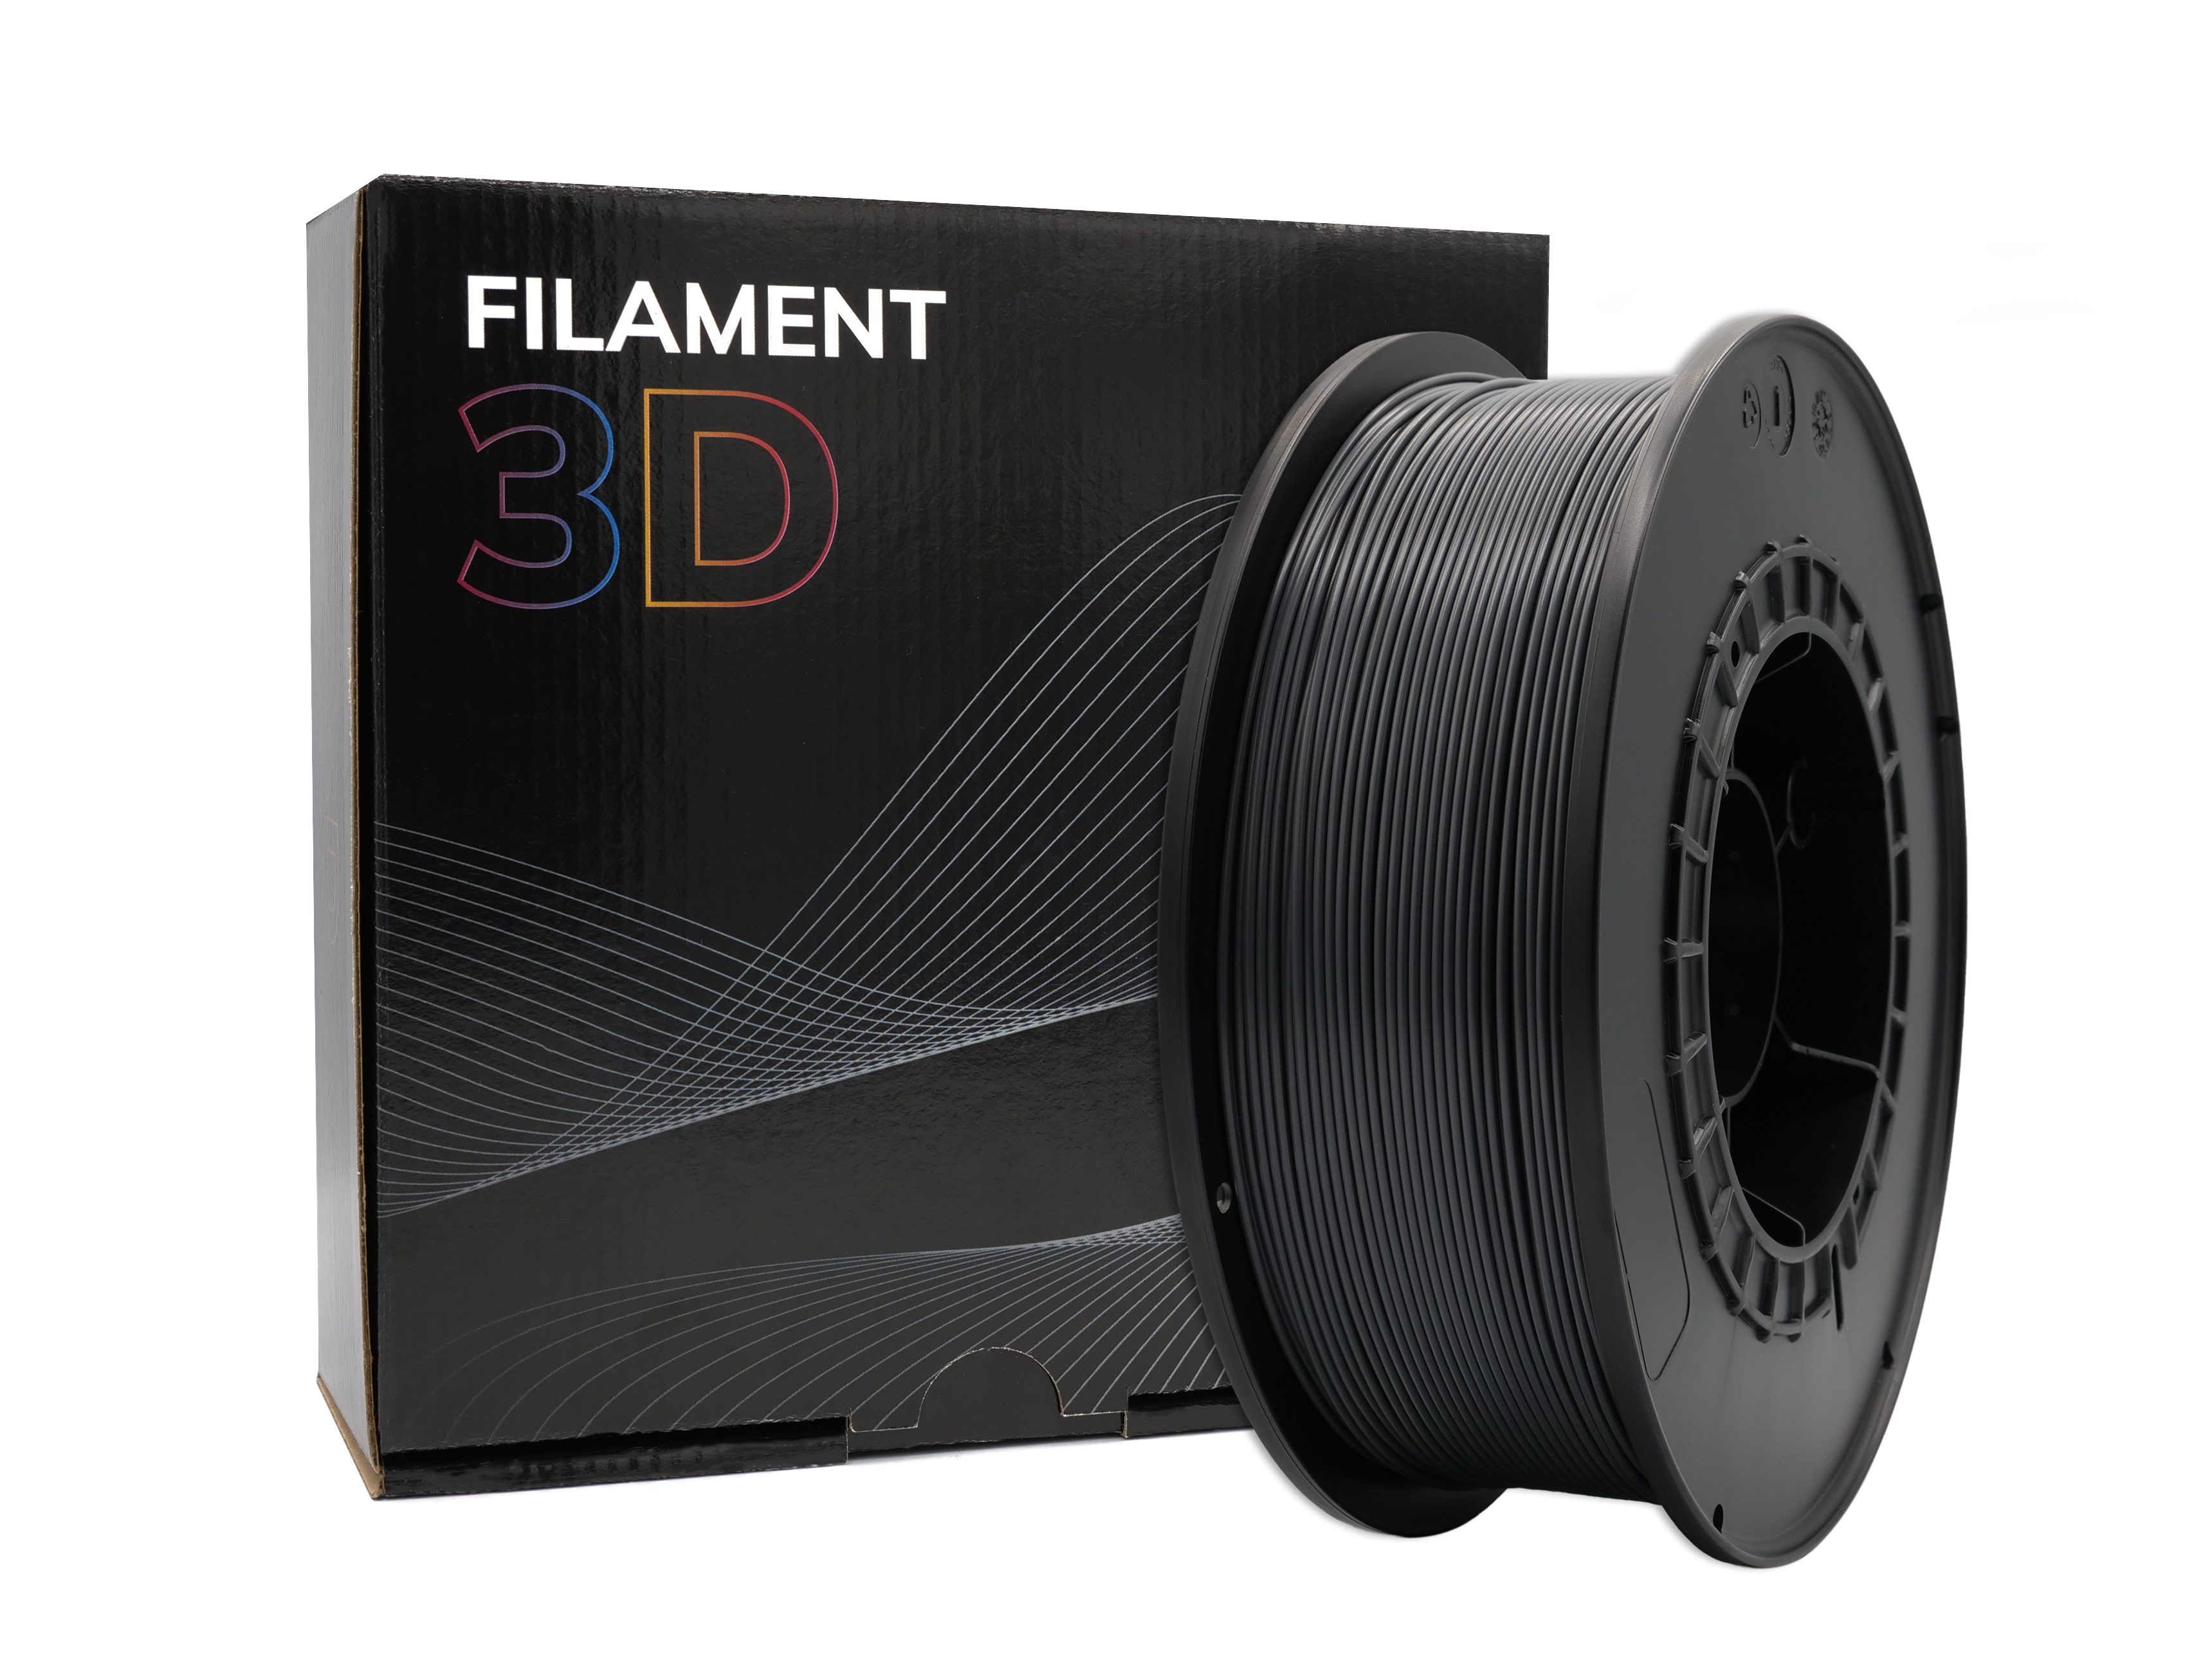 Filament PLA 3D - Diamètre 1.75mm - Bobine 1kg - Couleur Graphite